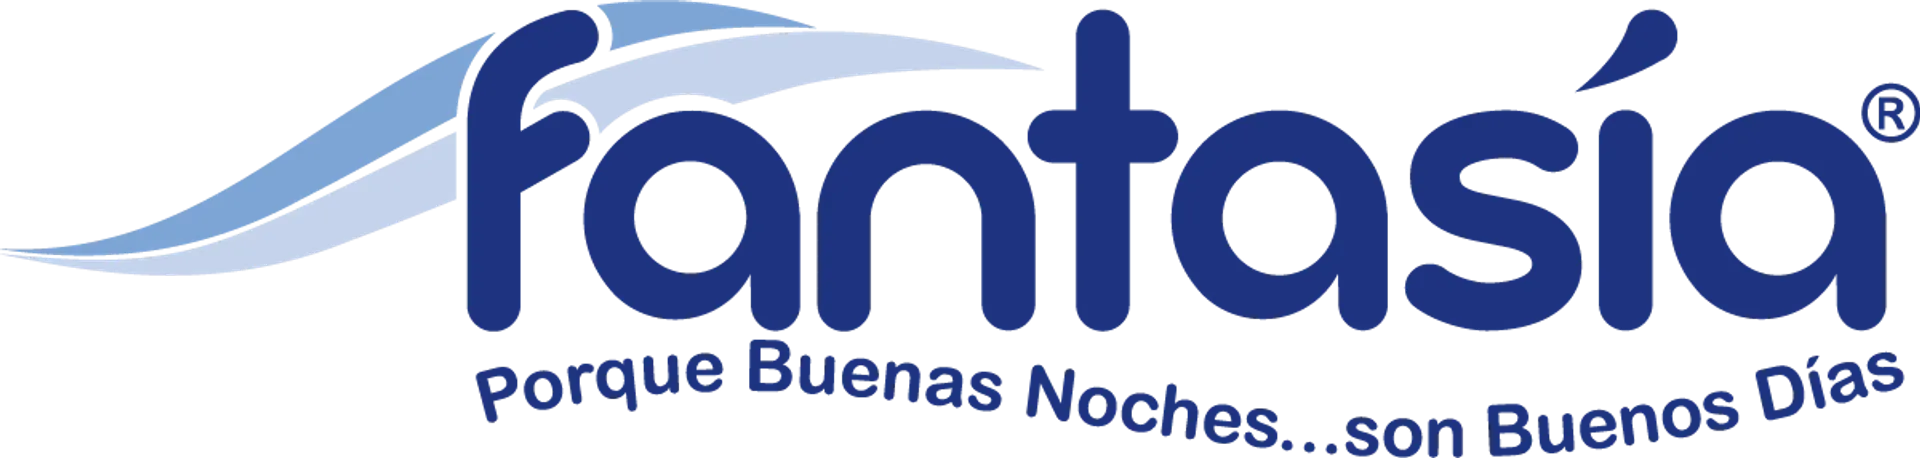 COLCHONES FANTASÍA logo